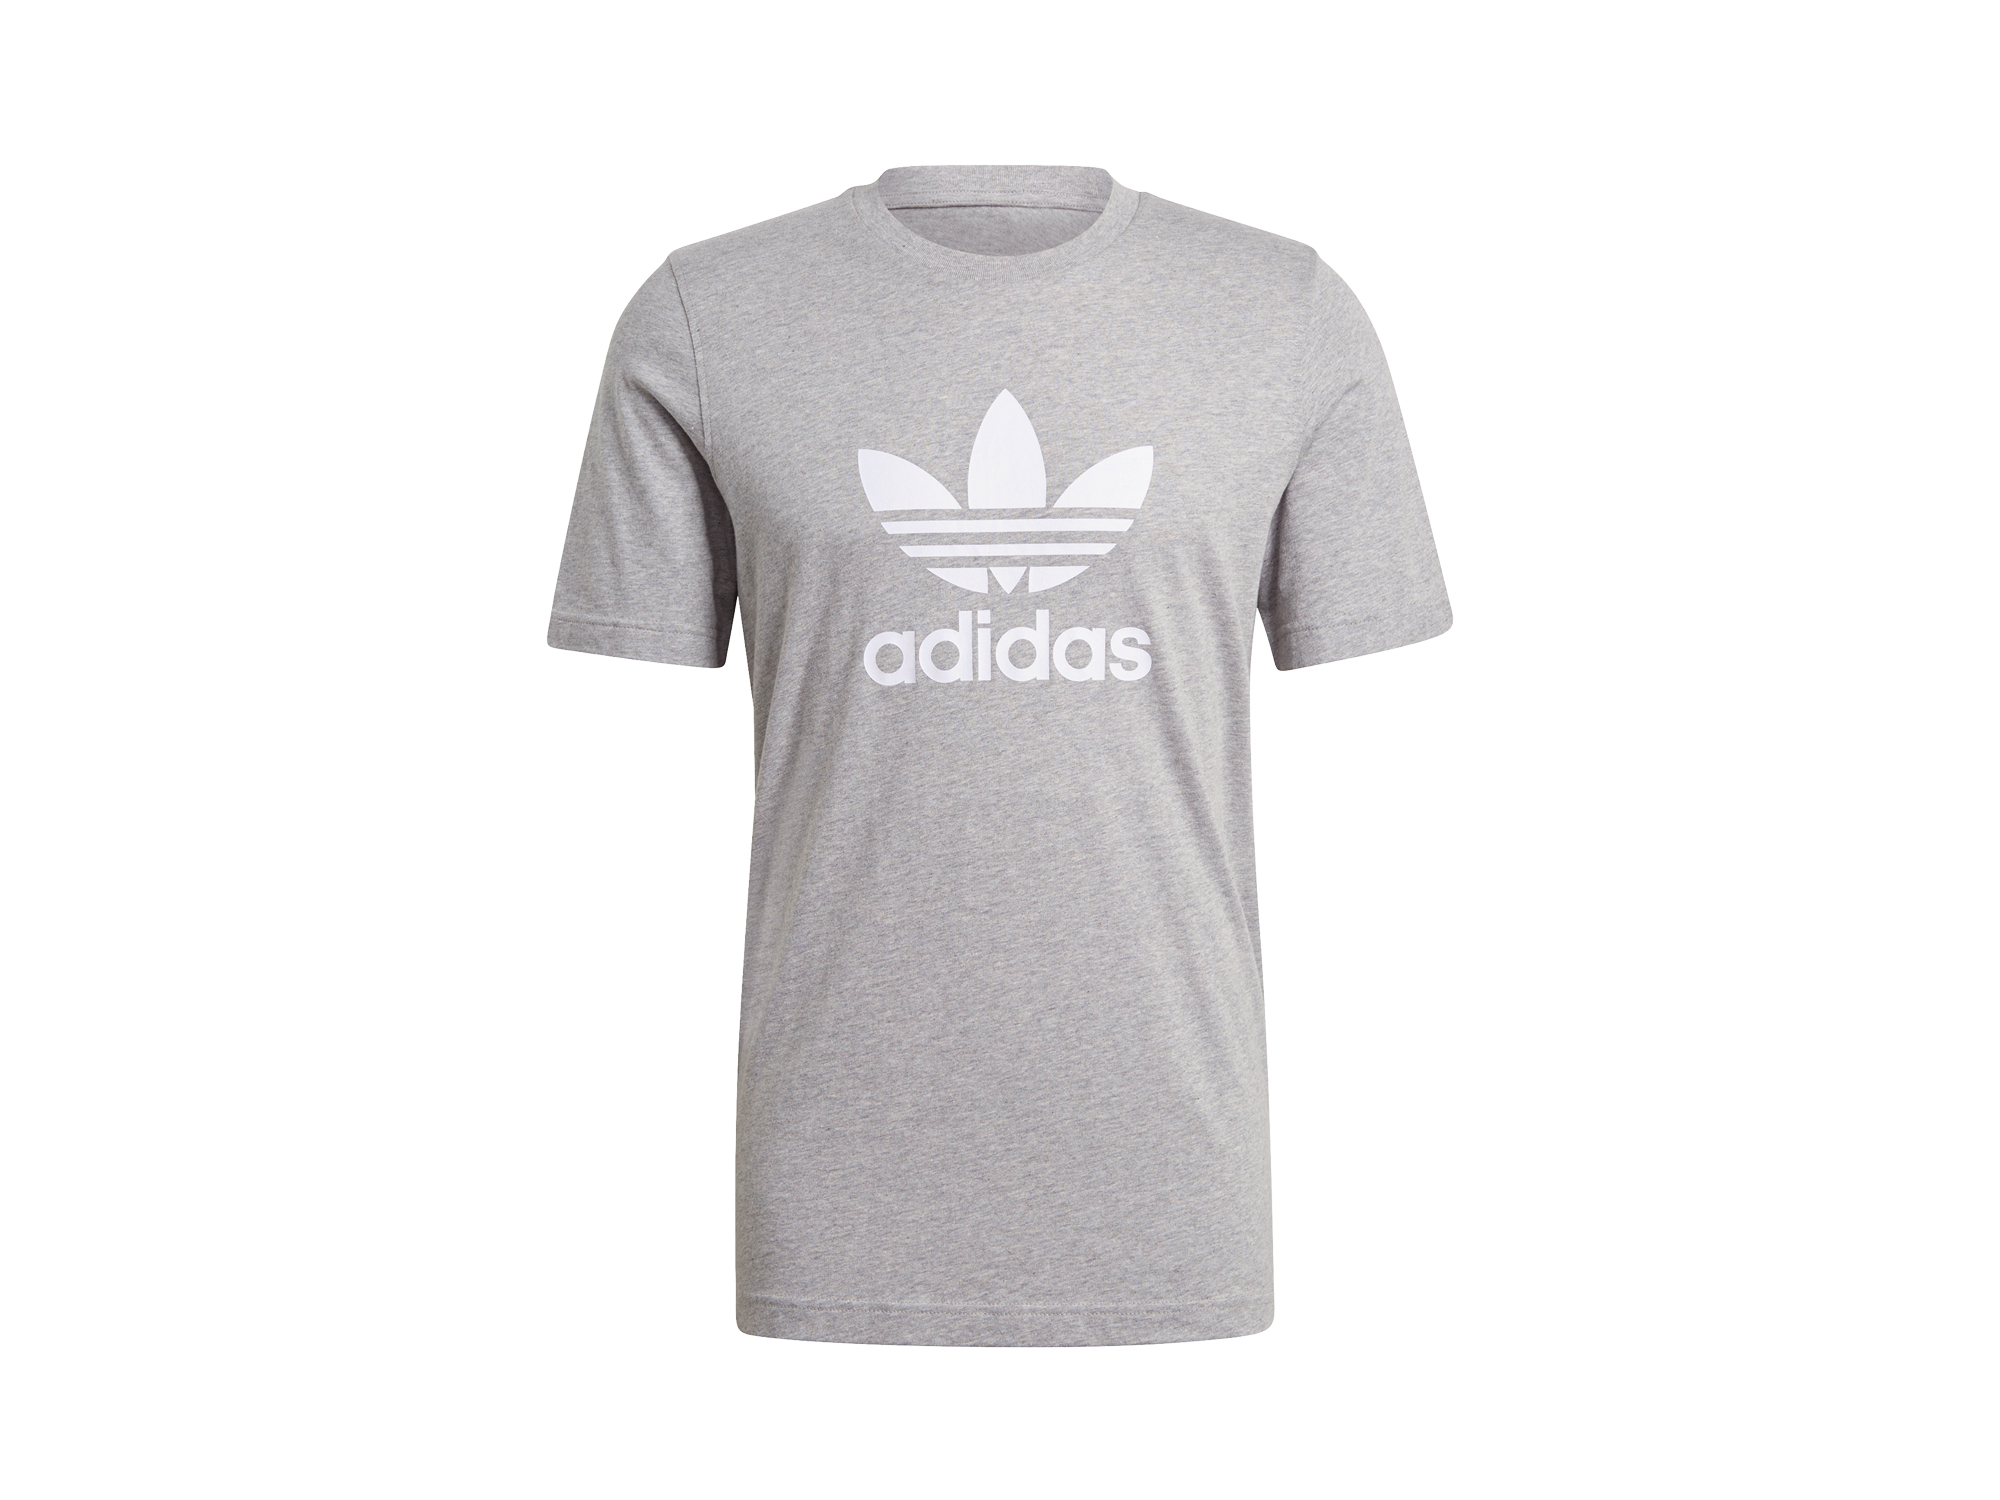 Adidas Originals Classics Trefoil T-Shirt